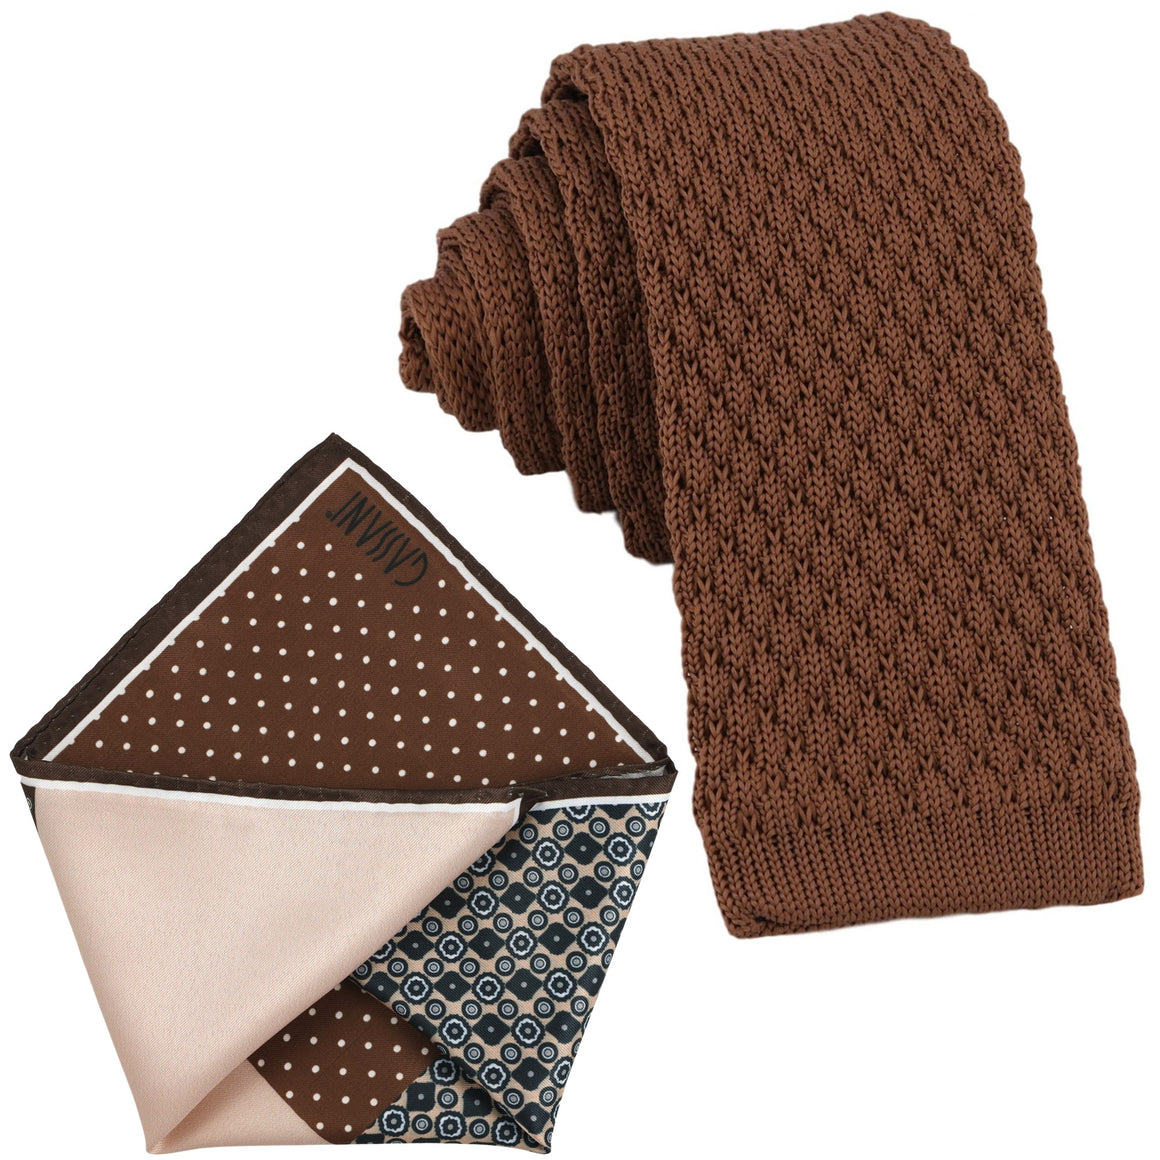 Sada kravat GASSANI, 6 cm úzká rovná hnědá pletená kravata, kapesní čtvercová barevná 4 vzory